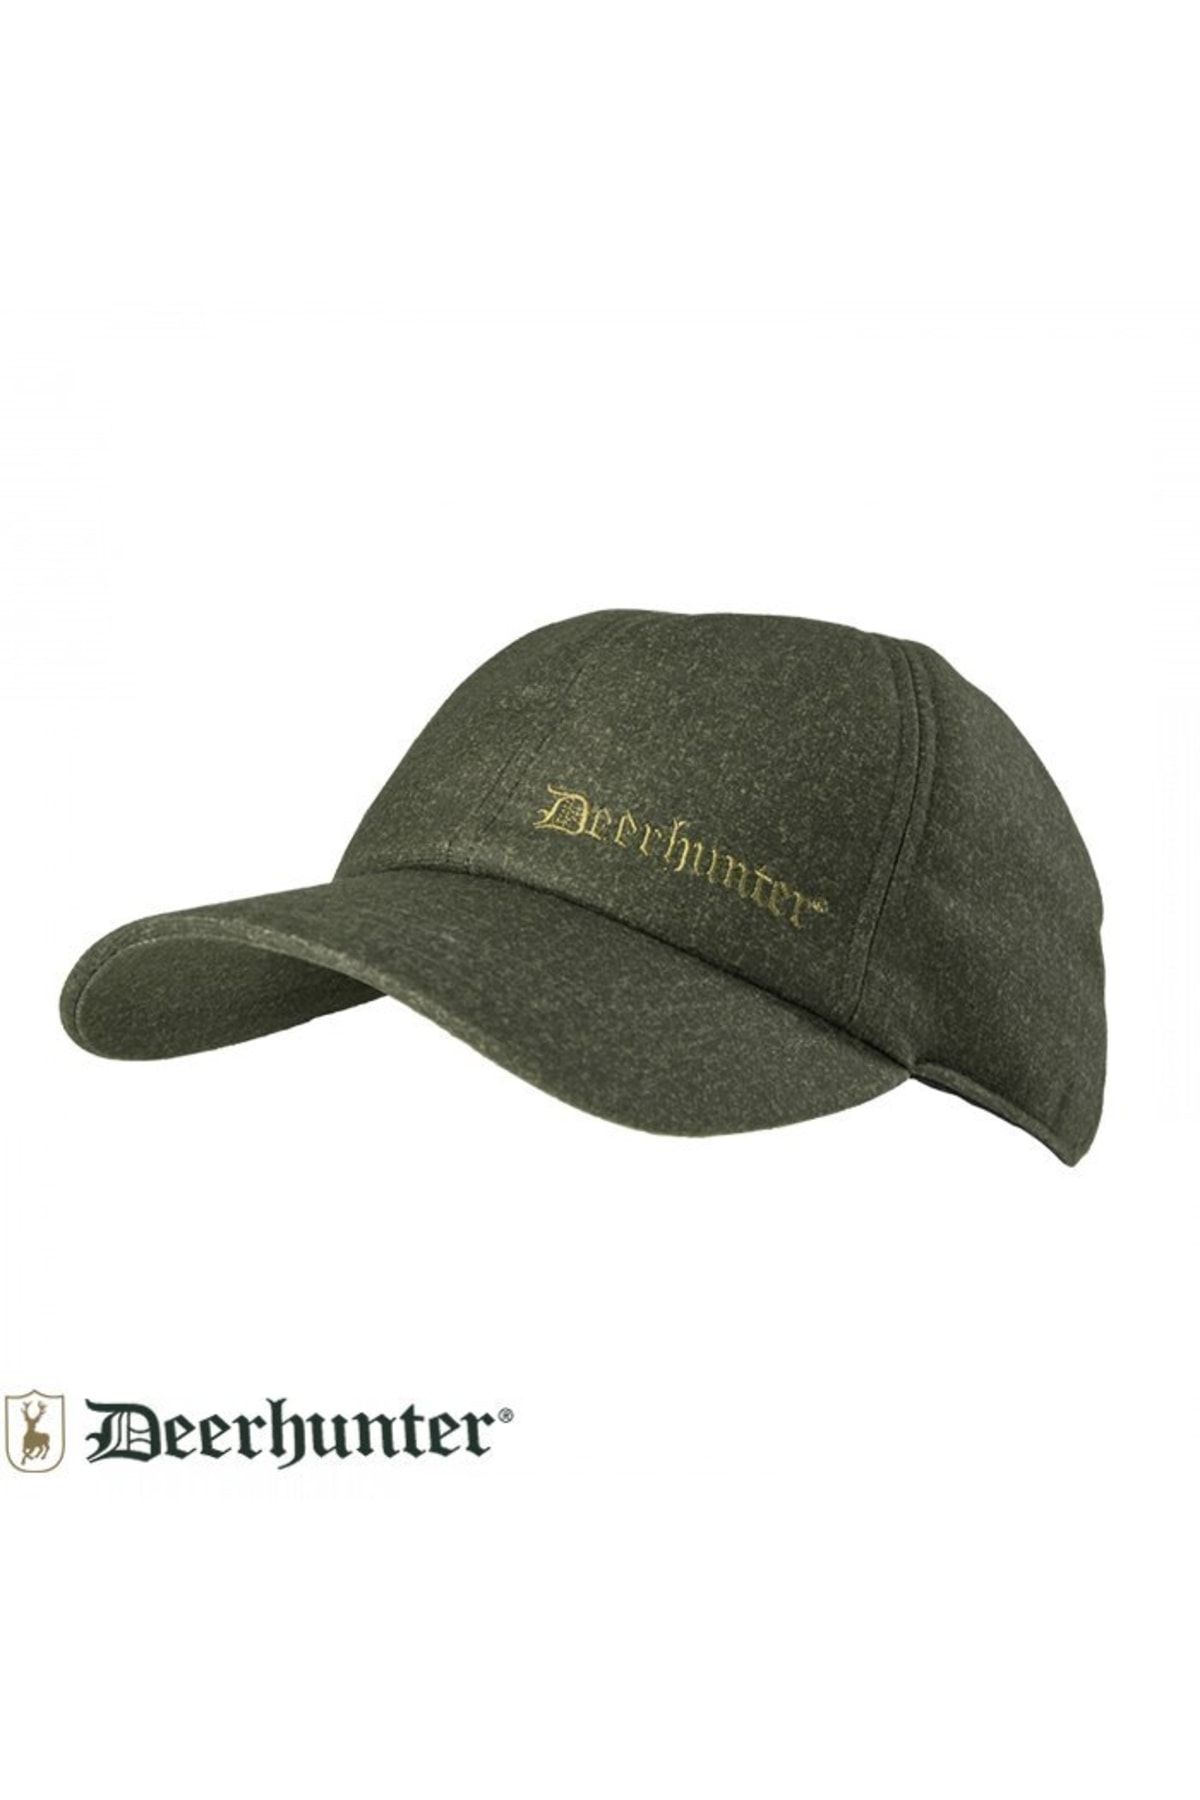 Deerhunter Ram Koyu Yeşil Kışlık Şapka 58/59